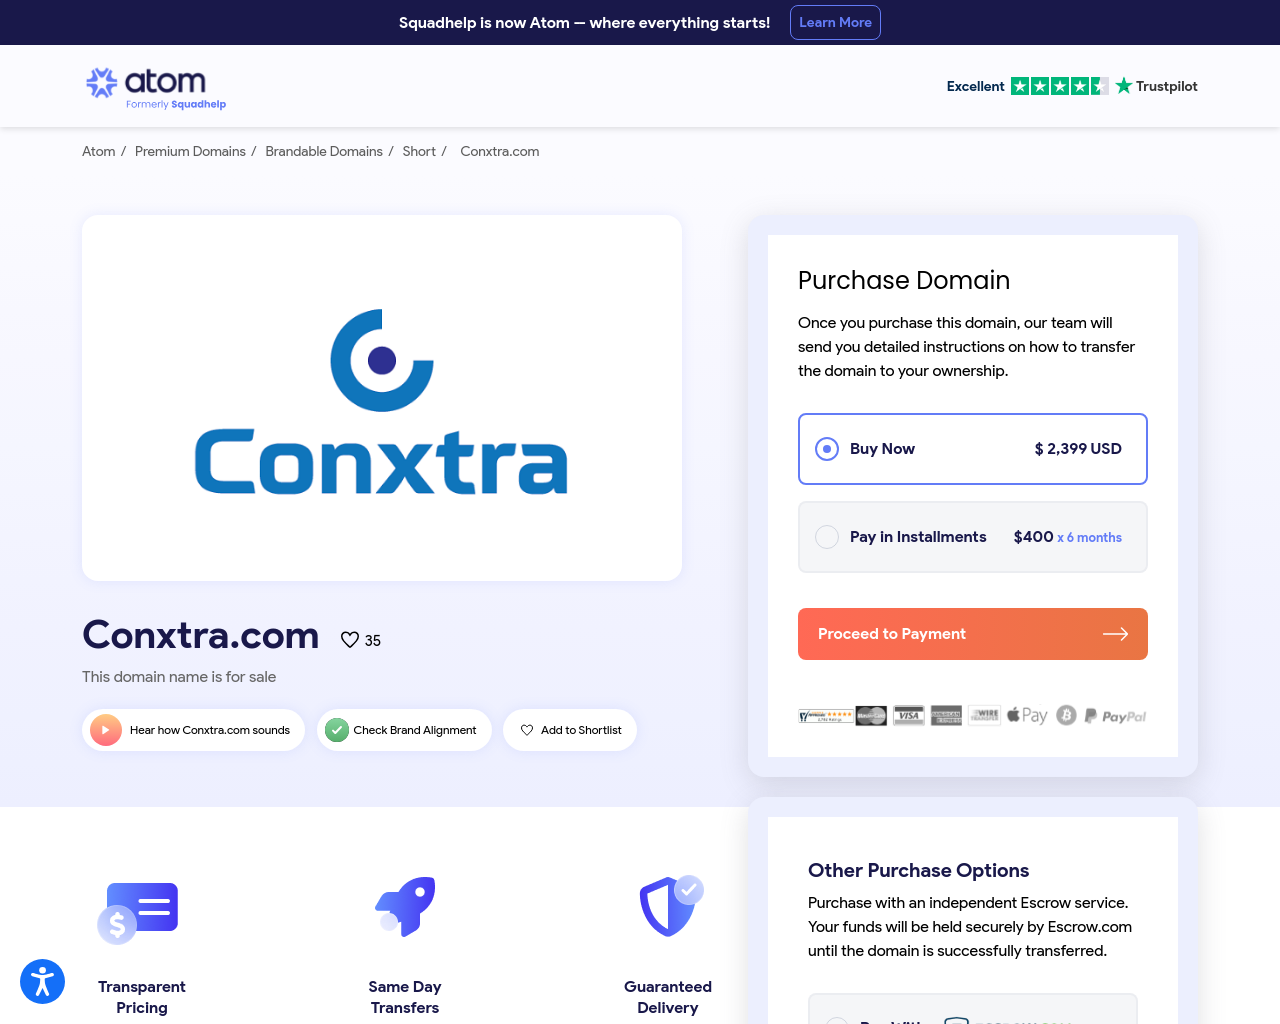 conxtra.com